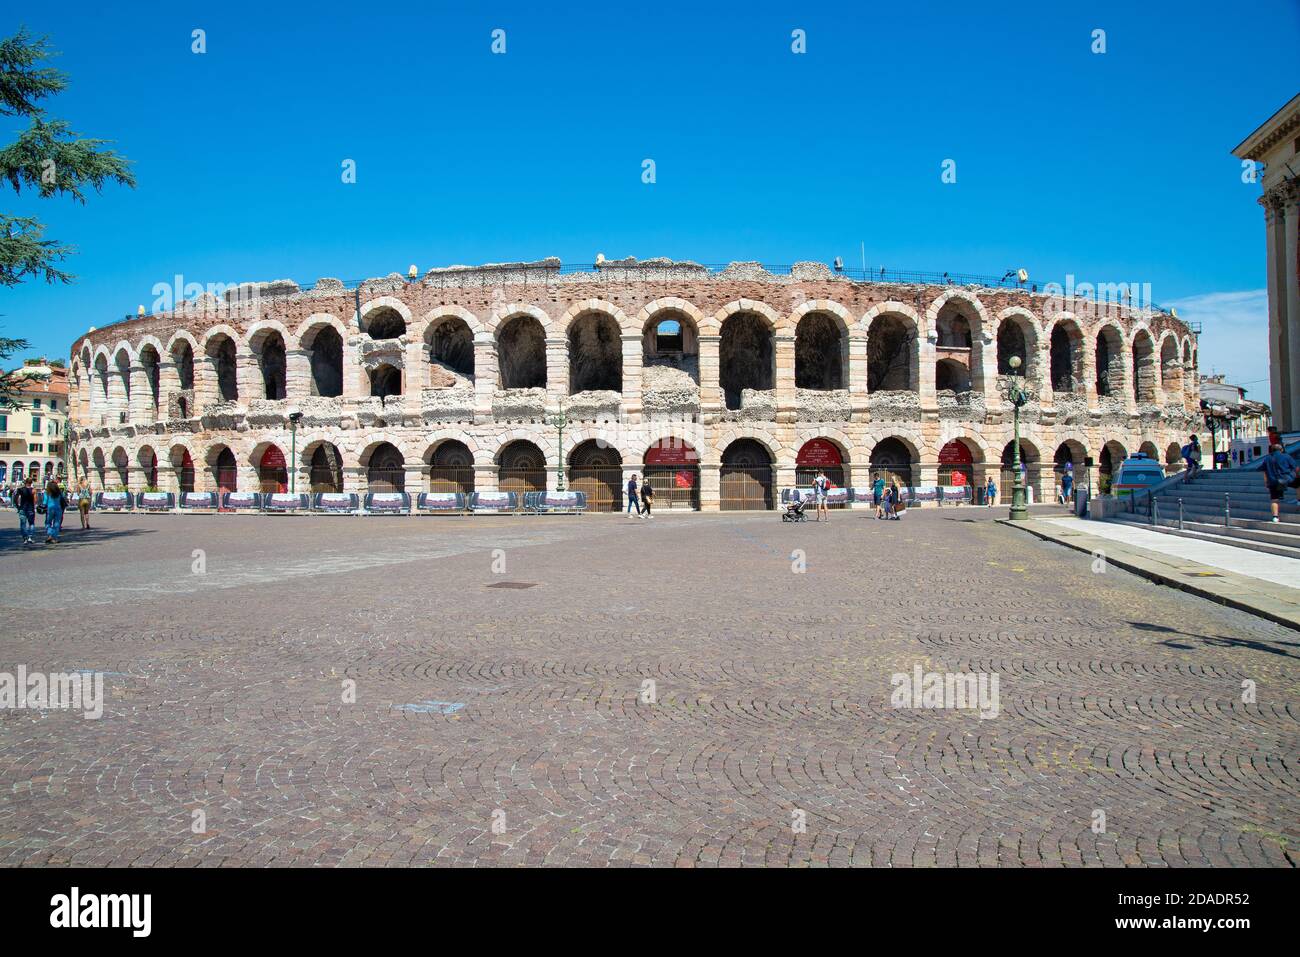 VERONA, ITALIA - 18 agosto 2020: Il vecchio e antico anfiteatro di Verona fotografato dall'esterno con il suo anello esterno decaduto davanti ad un blu Foto Stock